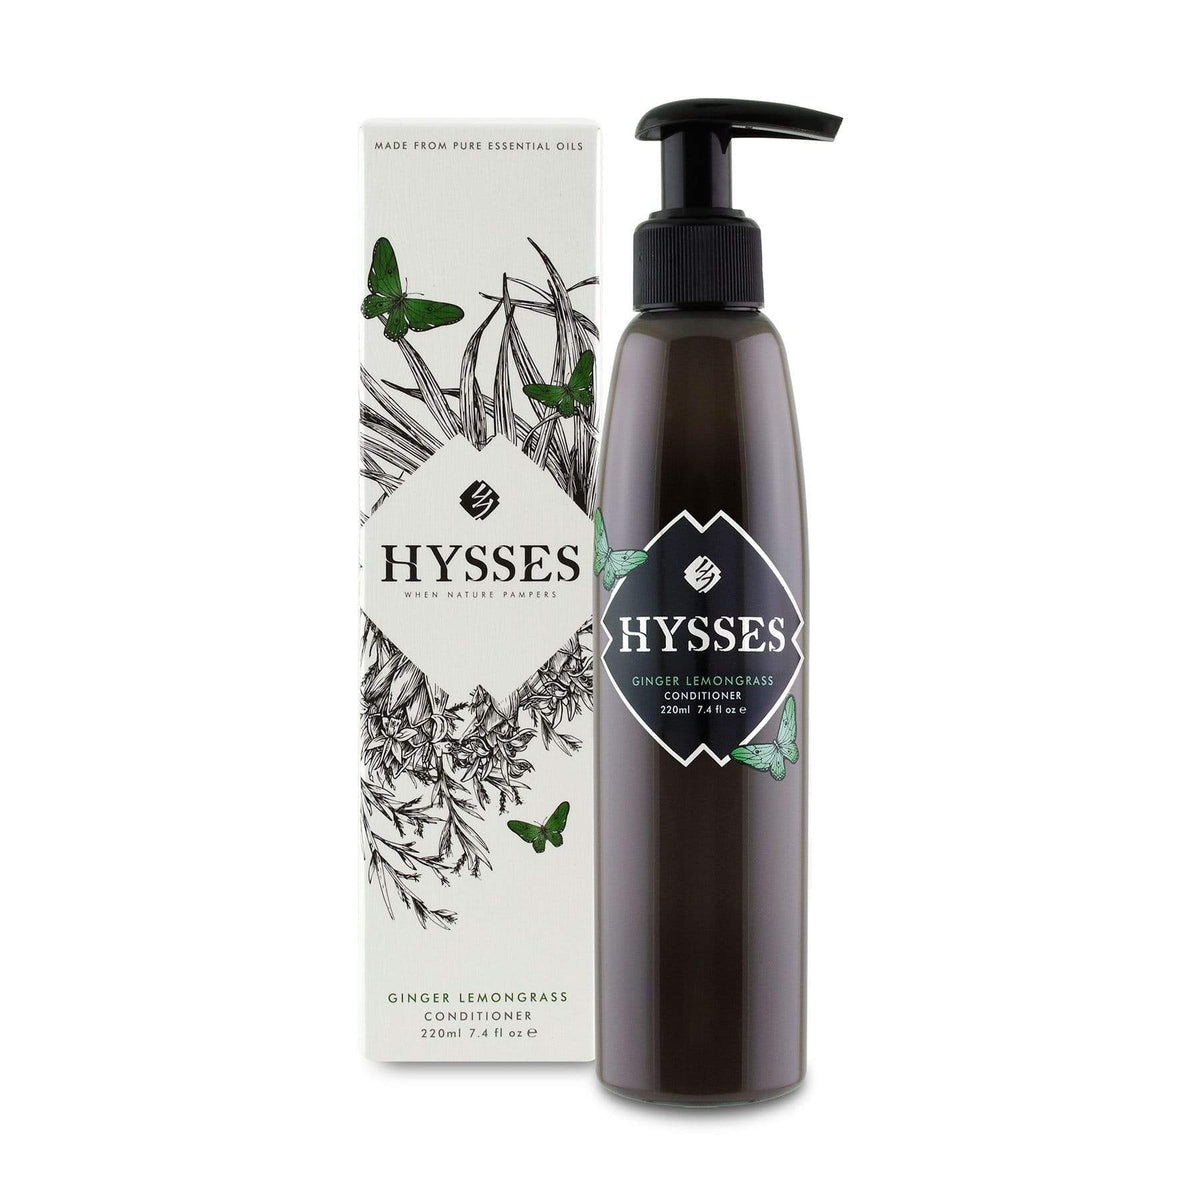 Hysses Hair Care 220ml Conditioner Ginger Lemongrass, 220ml